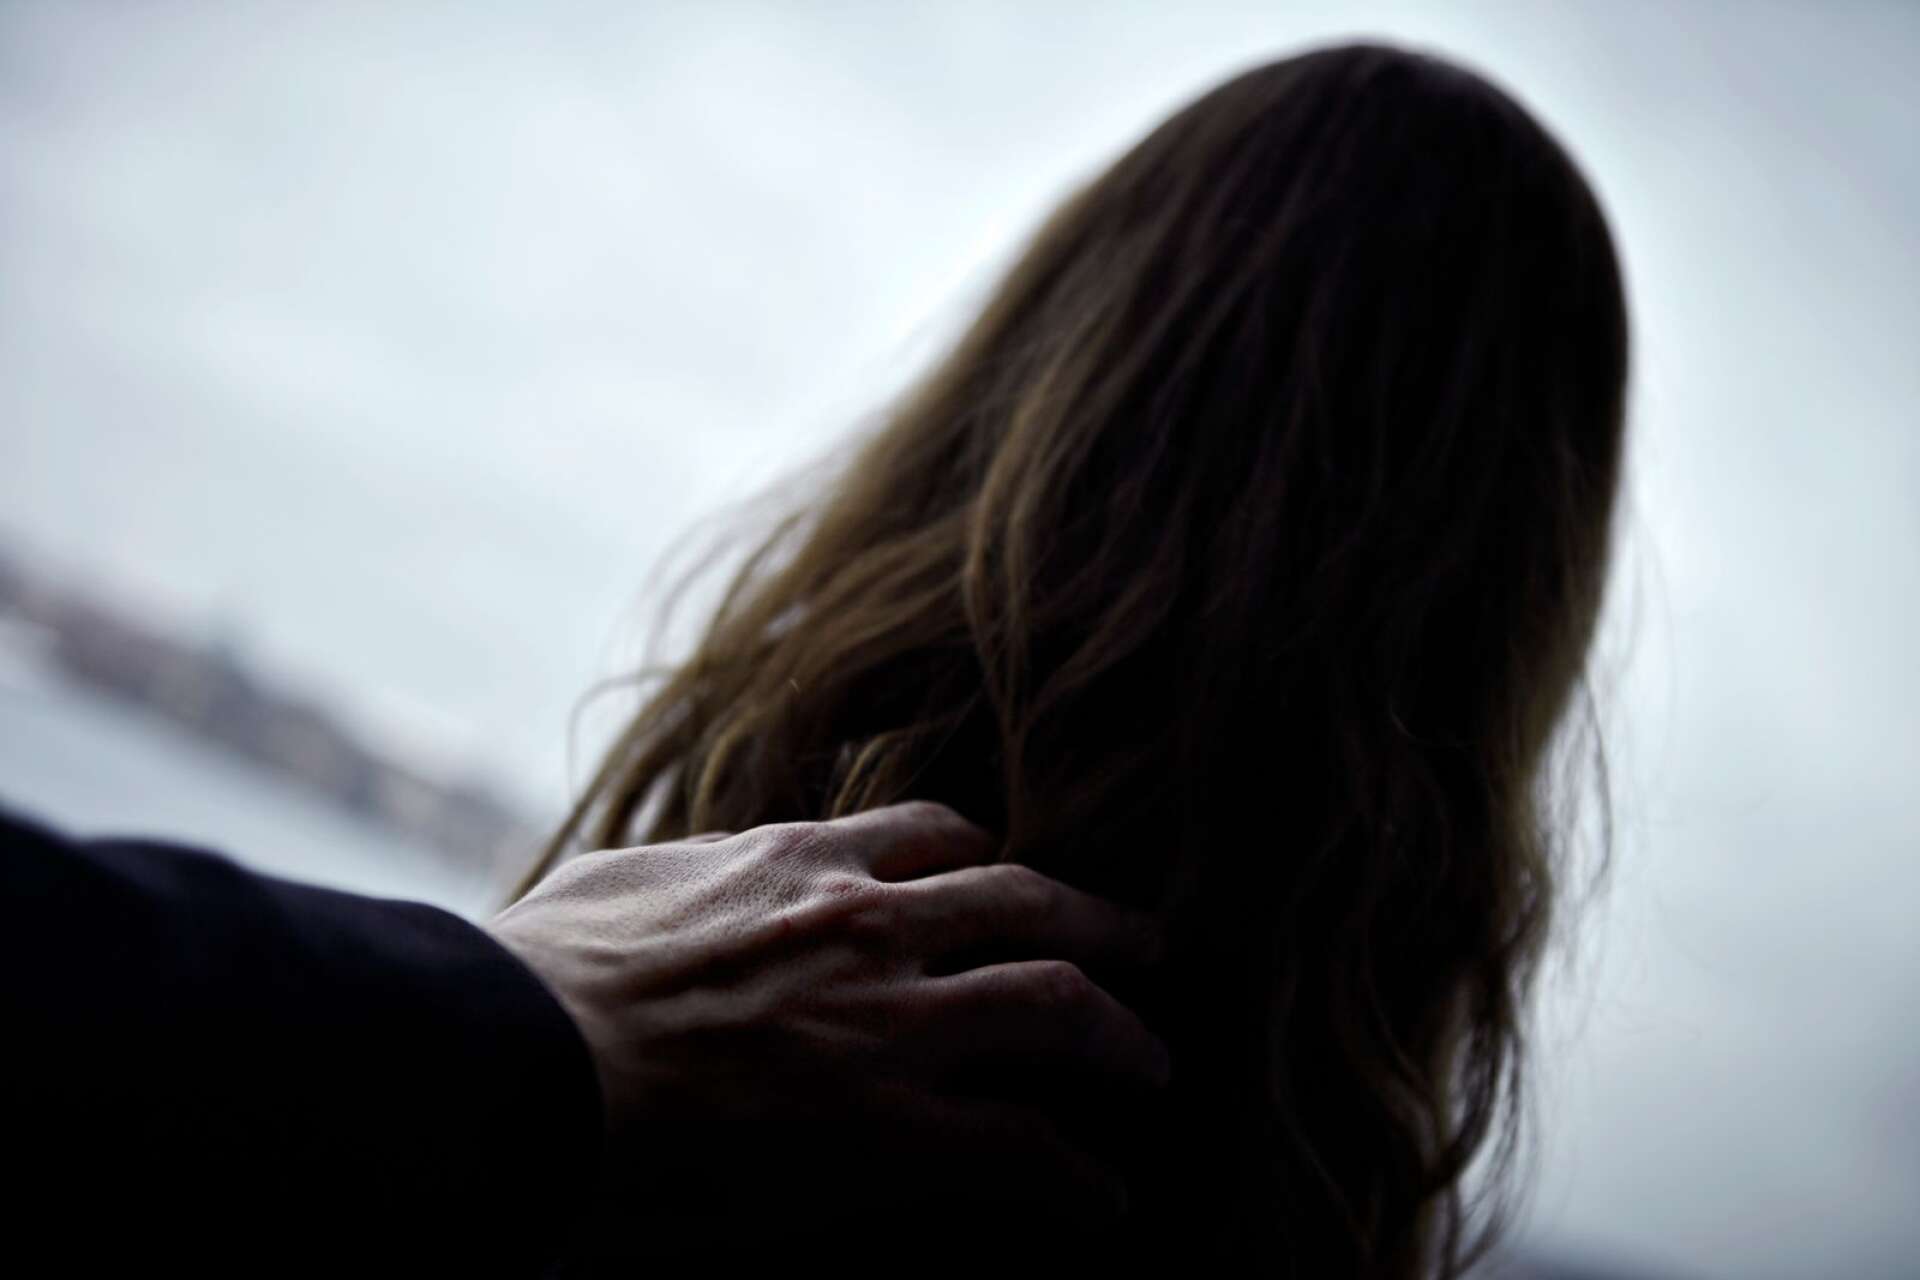 Kvinnan beskriver att en manlig kollega utsatte henne för trakasserier under en lång period, men att Region Värmland inte gjorde tillräckligt. Nu inleder Diskrimineringsombudsmannen en tillsyn. Personerna på bilden har inget samband med artikeln.